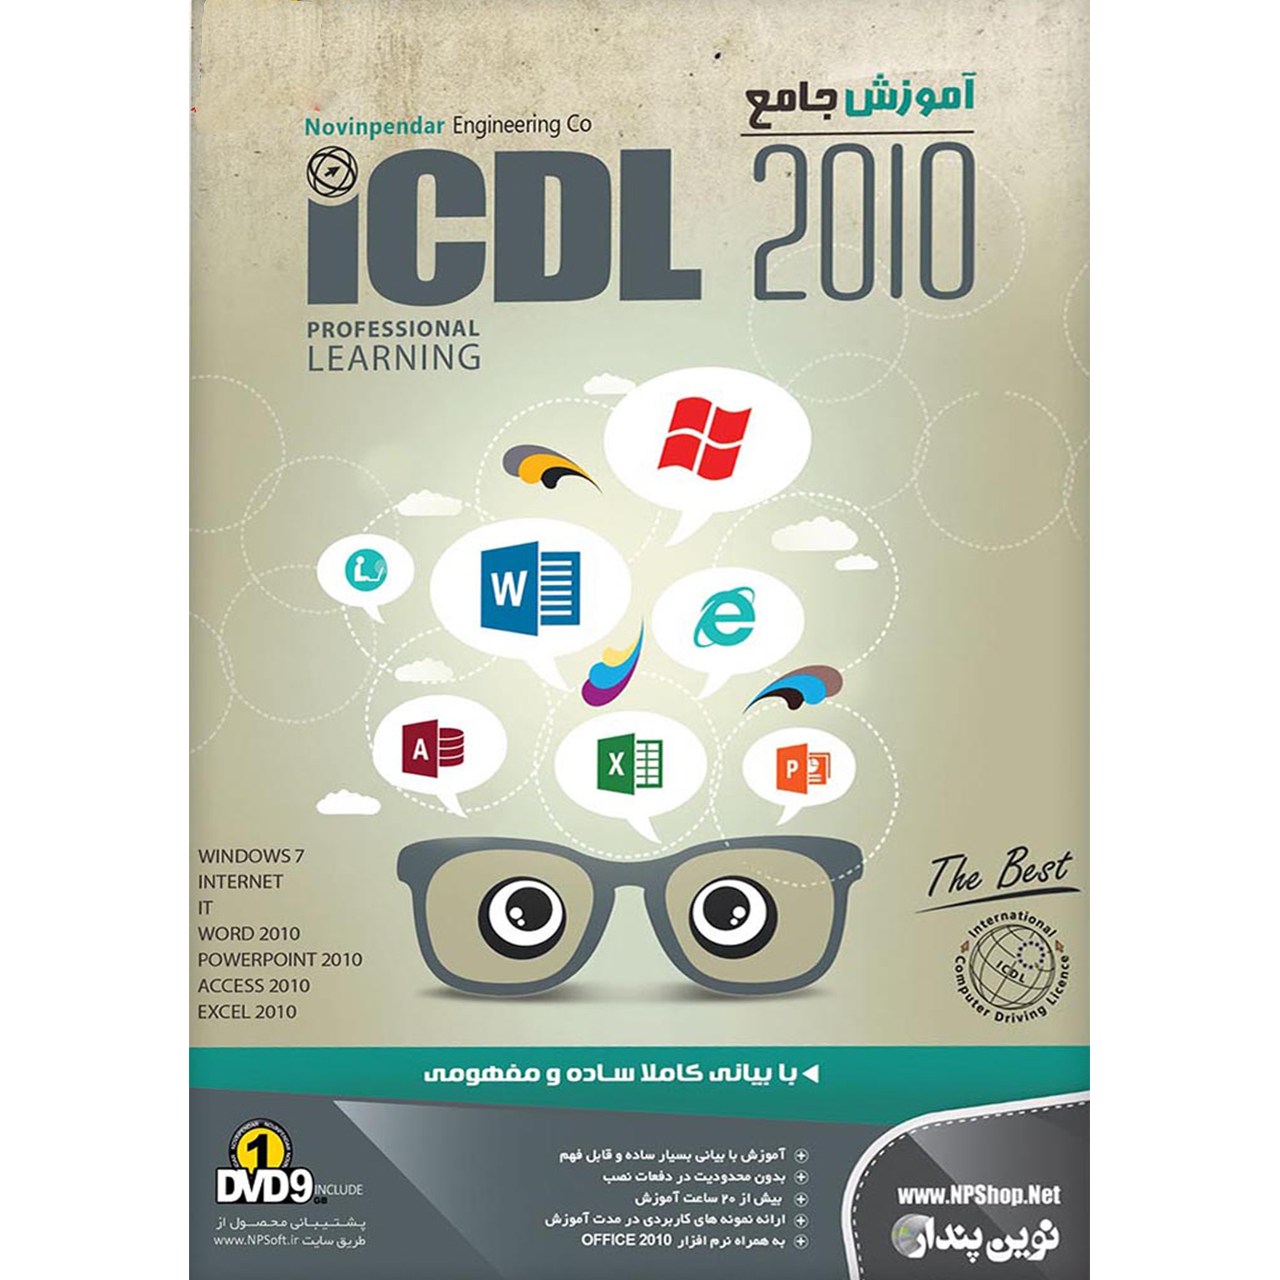 نقد و بررسی نرم افزار آموزش جامع ICDL 2010 نشر نوین پندار توسط خریداران